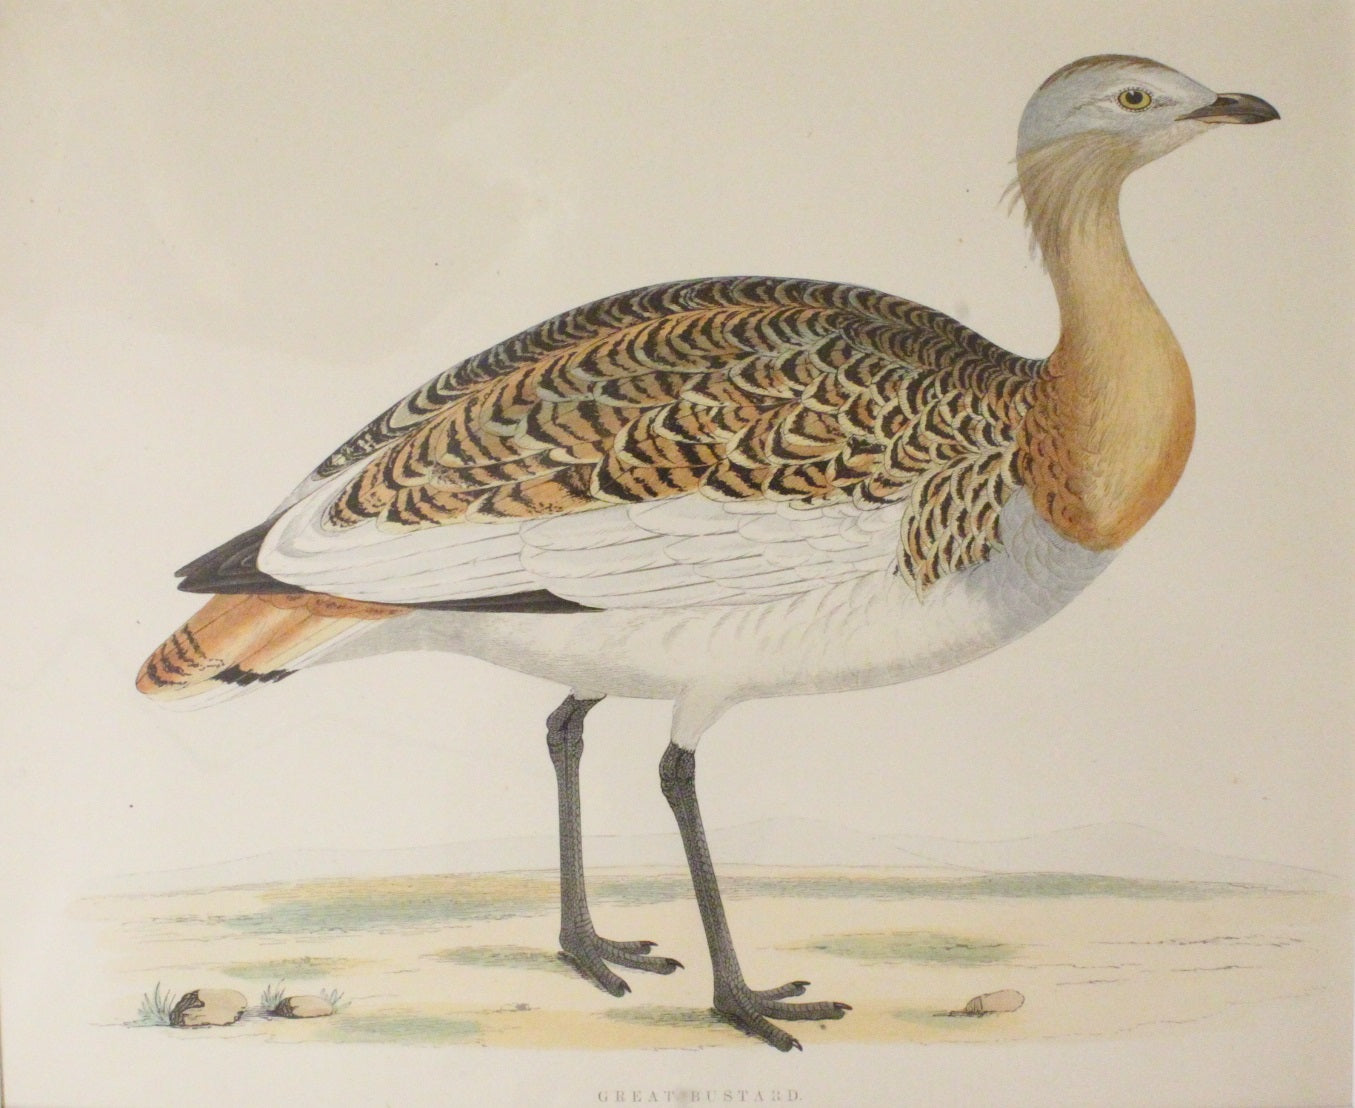 Bird: Morris Beverley Robinson, Great Bustard, 1855, Matted